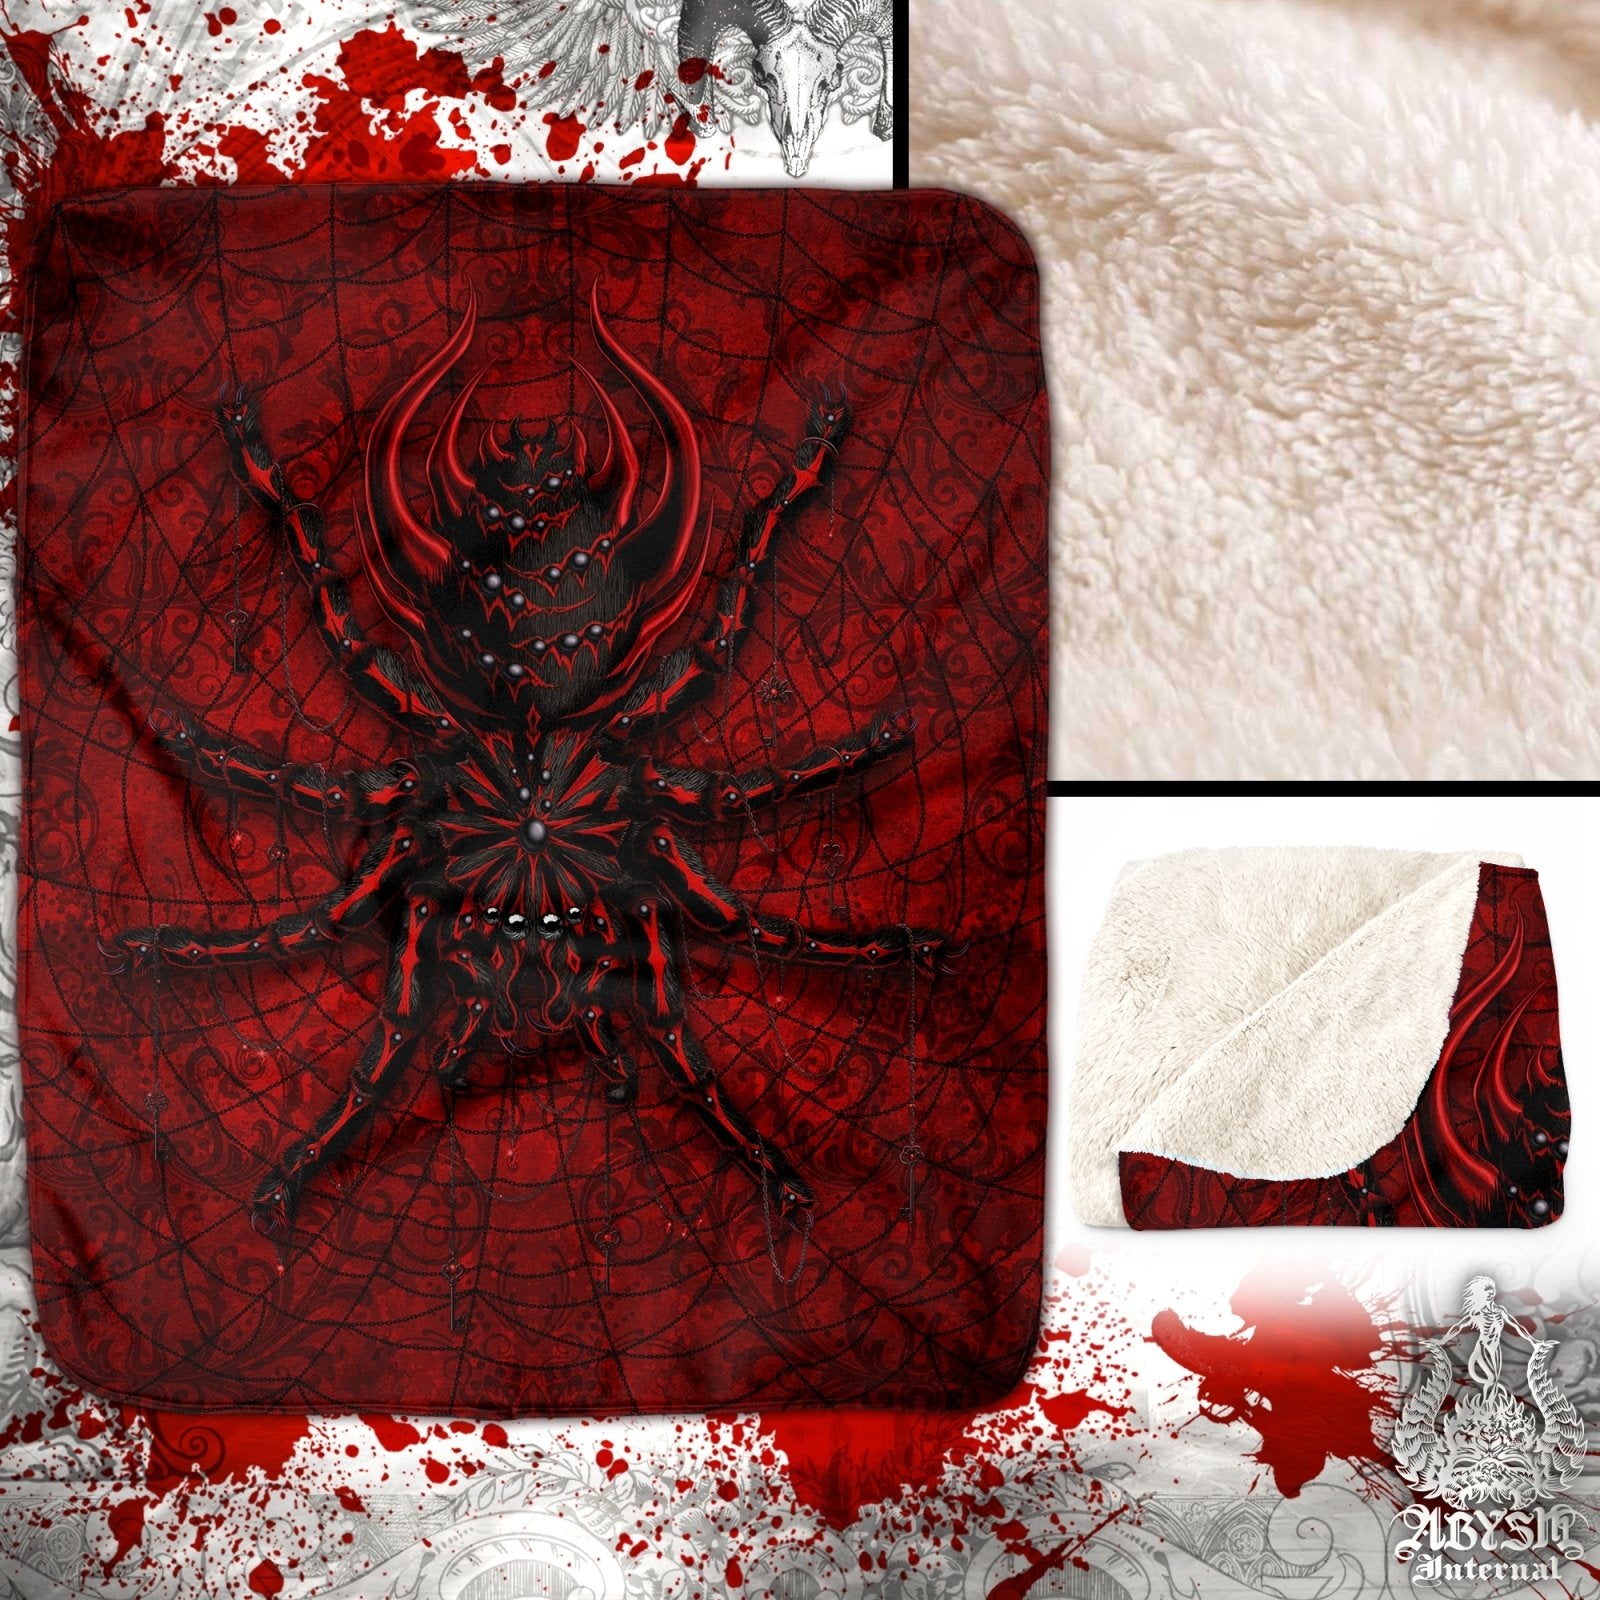 Gothic Throw Fleece Blanket, Dark Gift, Goth Home Decor, Alternative Art Gift - Bloody Red, Black Spider, Tarantula Art - Abysm Internal